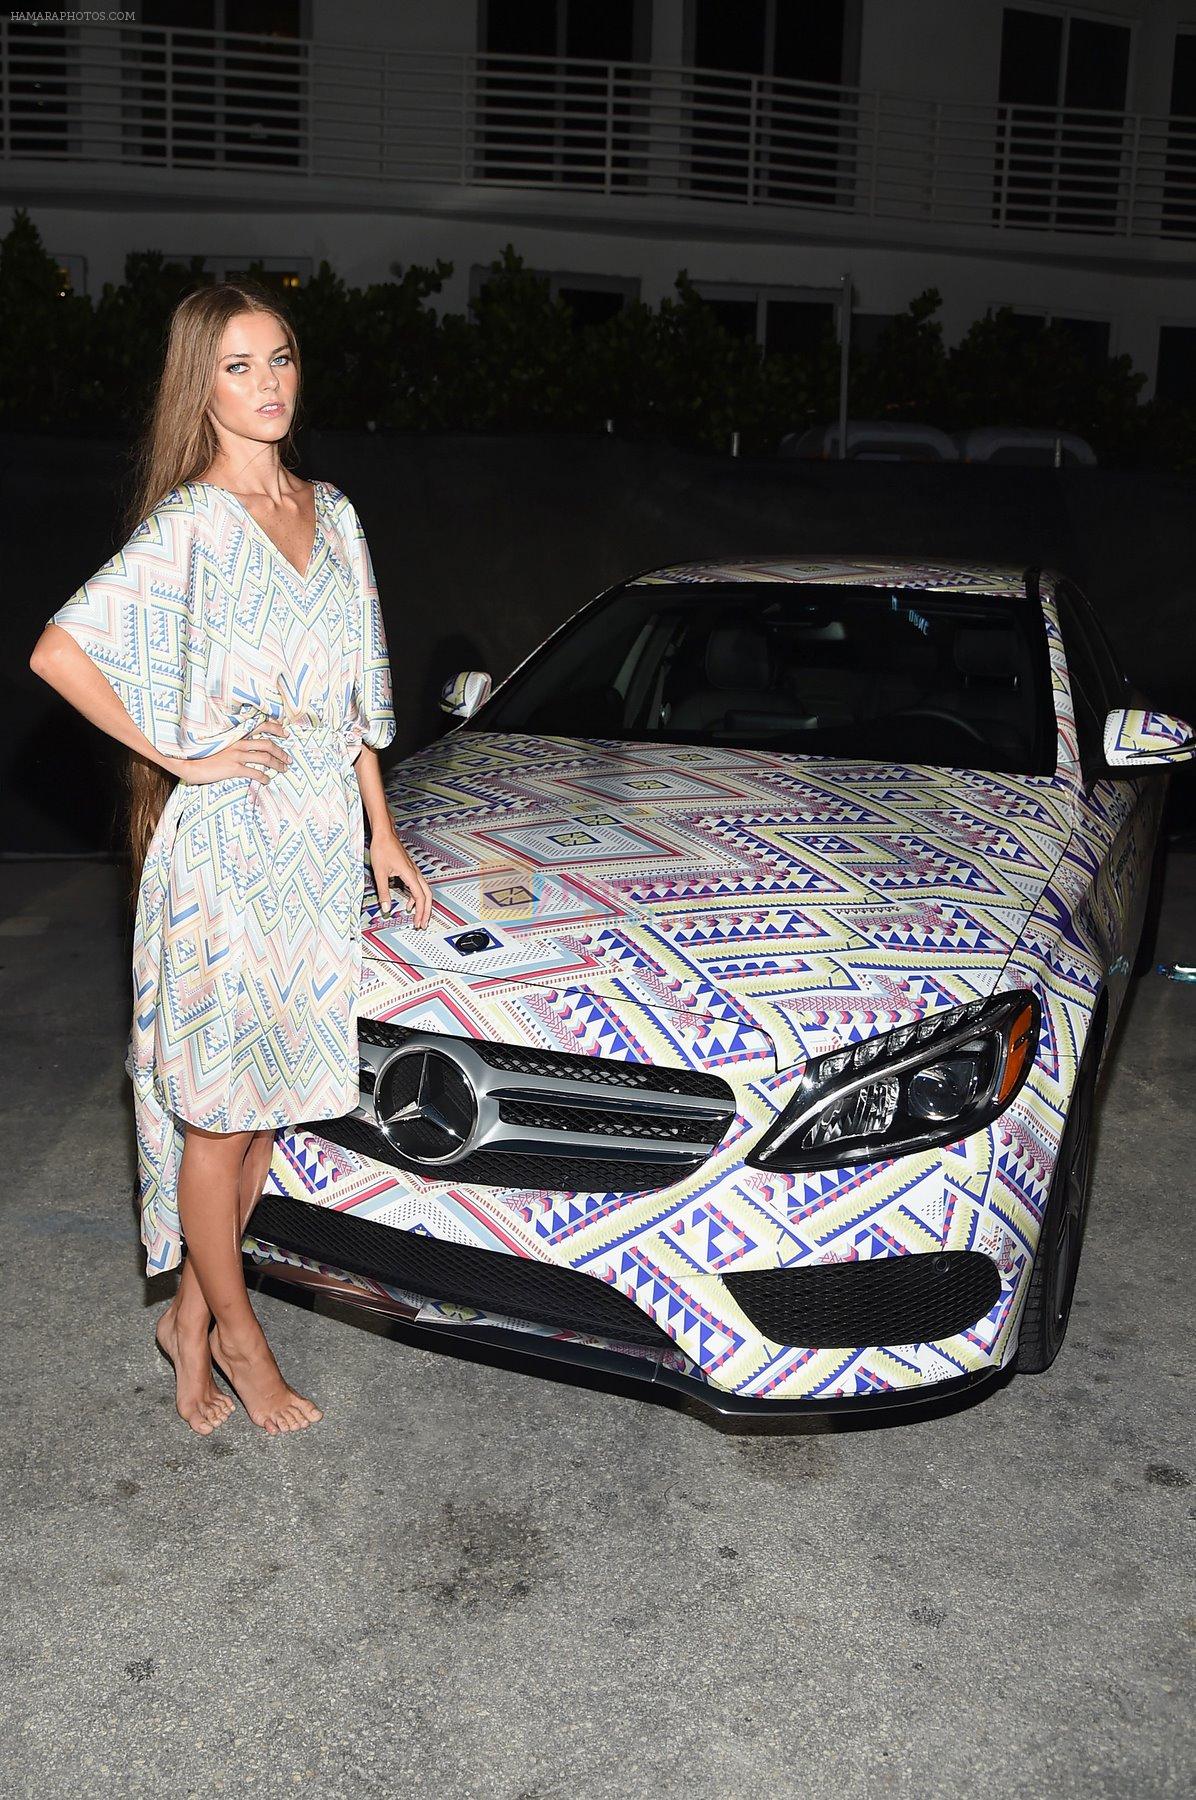 2015 Mercedes-Benz Fashion Week Miami [Swim] on 18th July 2014